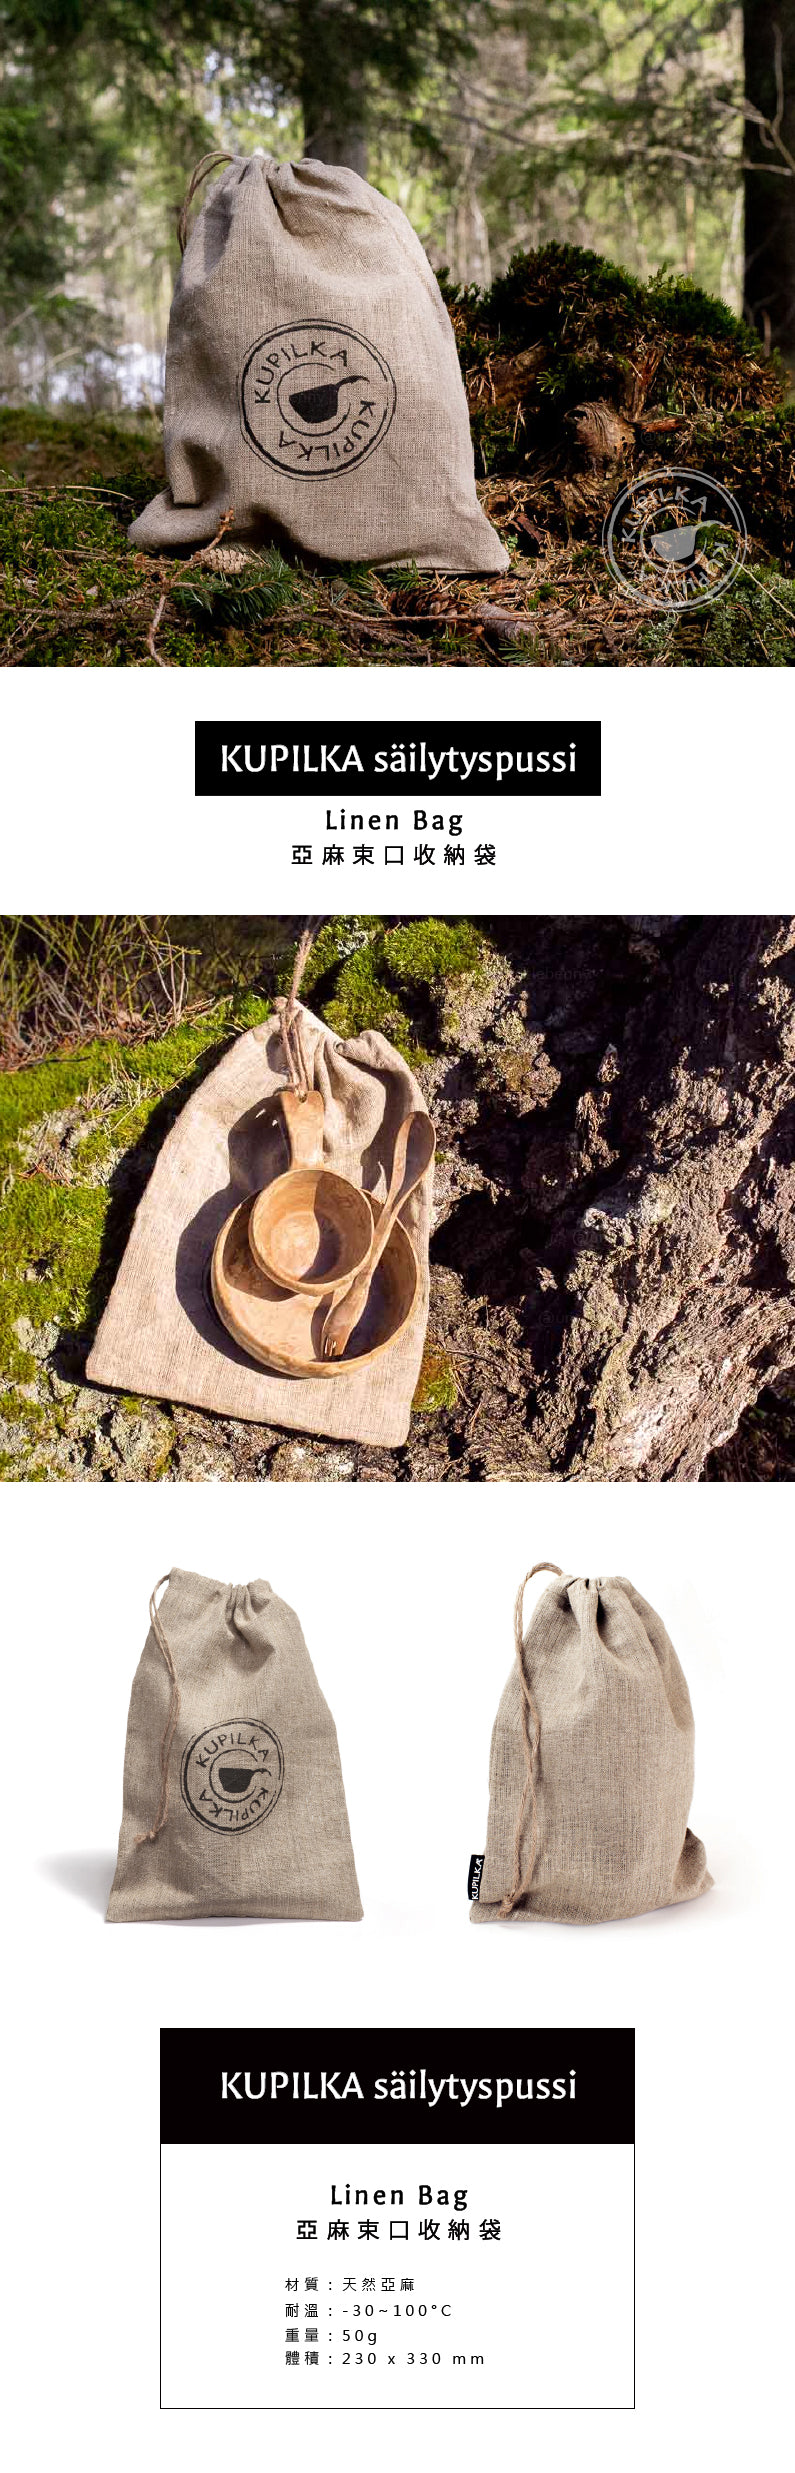 芬蘭 KUPILKA • Linen Bag 亞麻束口收納袋